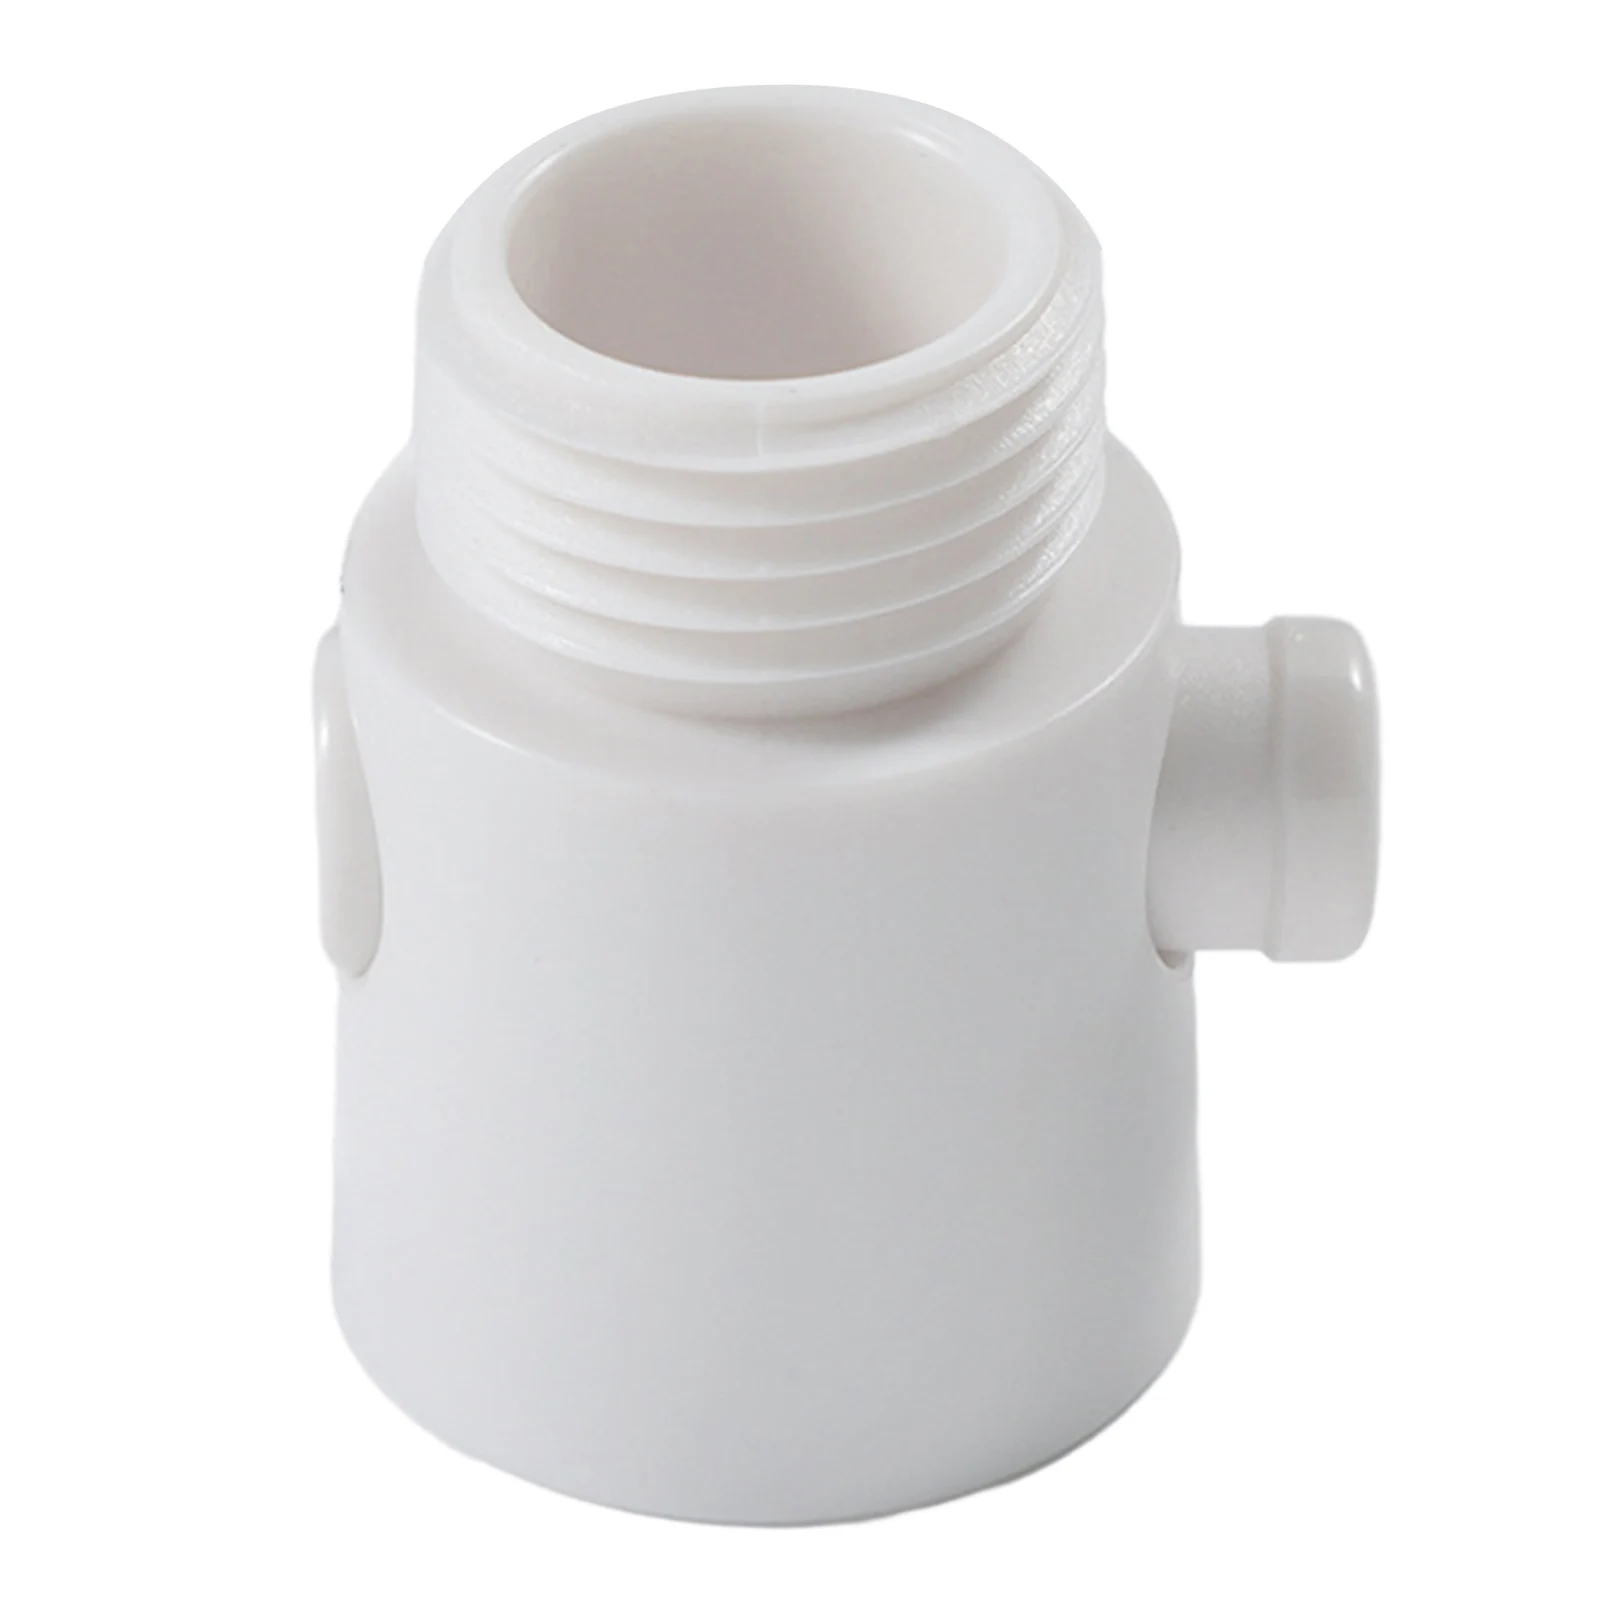 АБС-насадка для душа, Отводящие клапаны для рук, распылитель для биде, Угловой клапан для отключения воды, регулятор расхода, стоп-переключатель, аксессуар для ванной комнаты 0